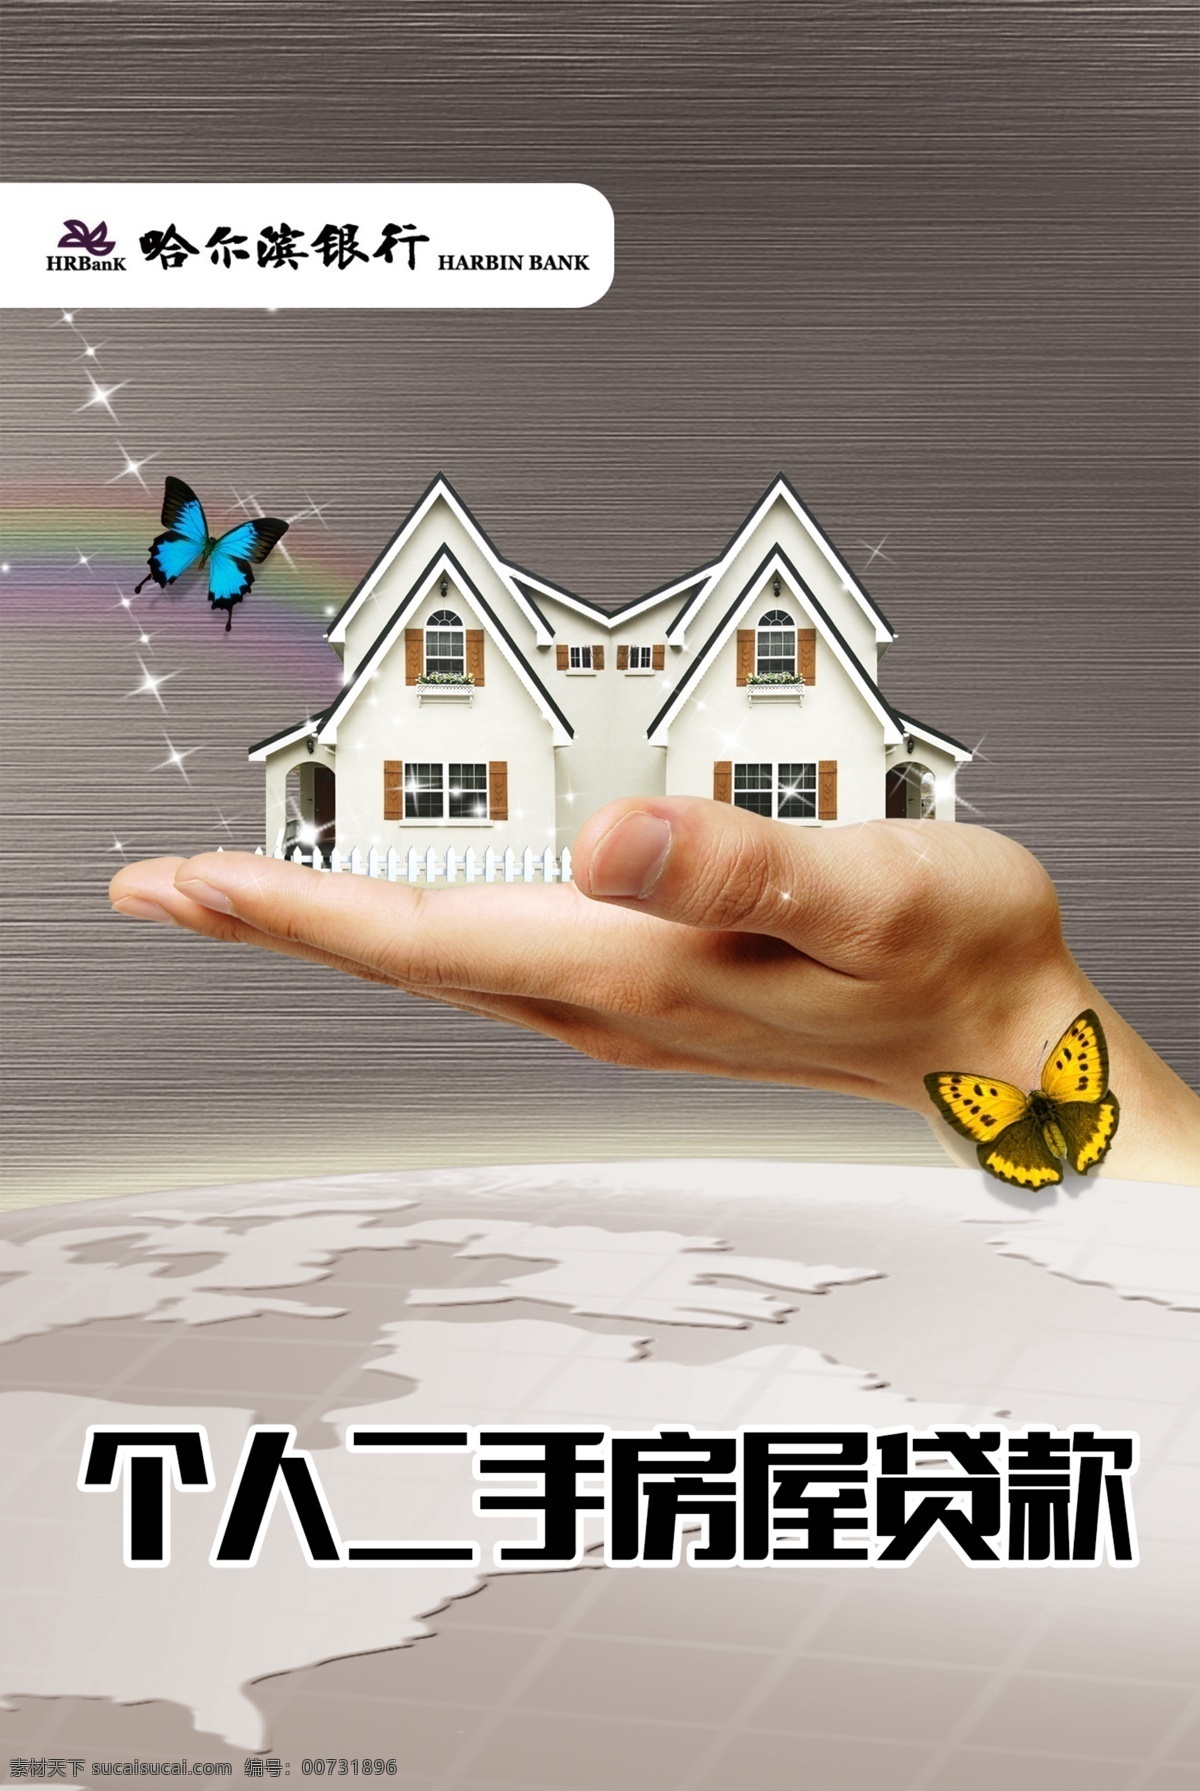 房屋贷款海报 地球 背景 星光 蝴蝶 手 拖起 托起 别墅 房屋 白色